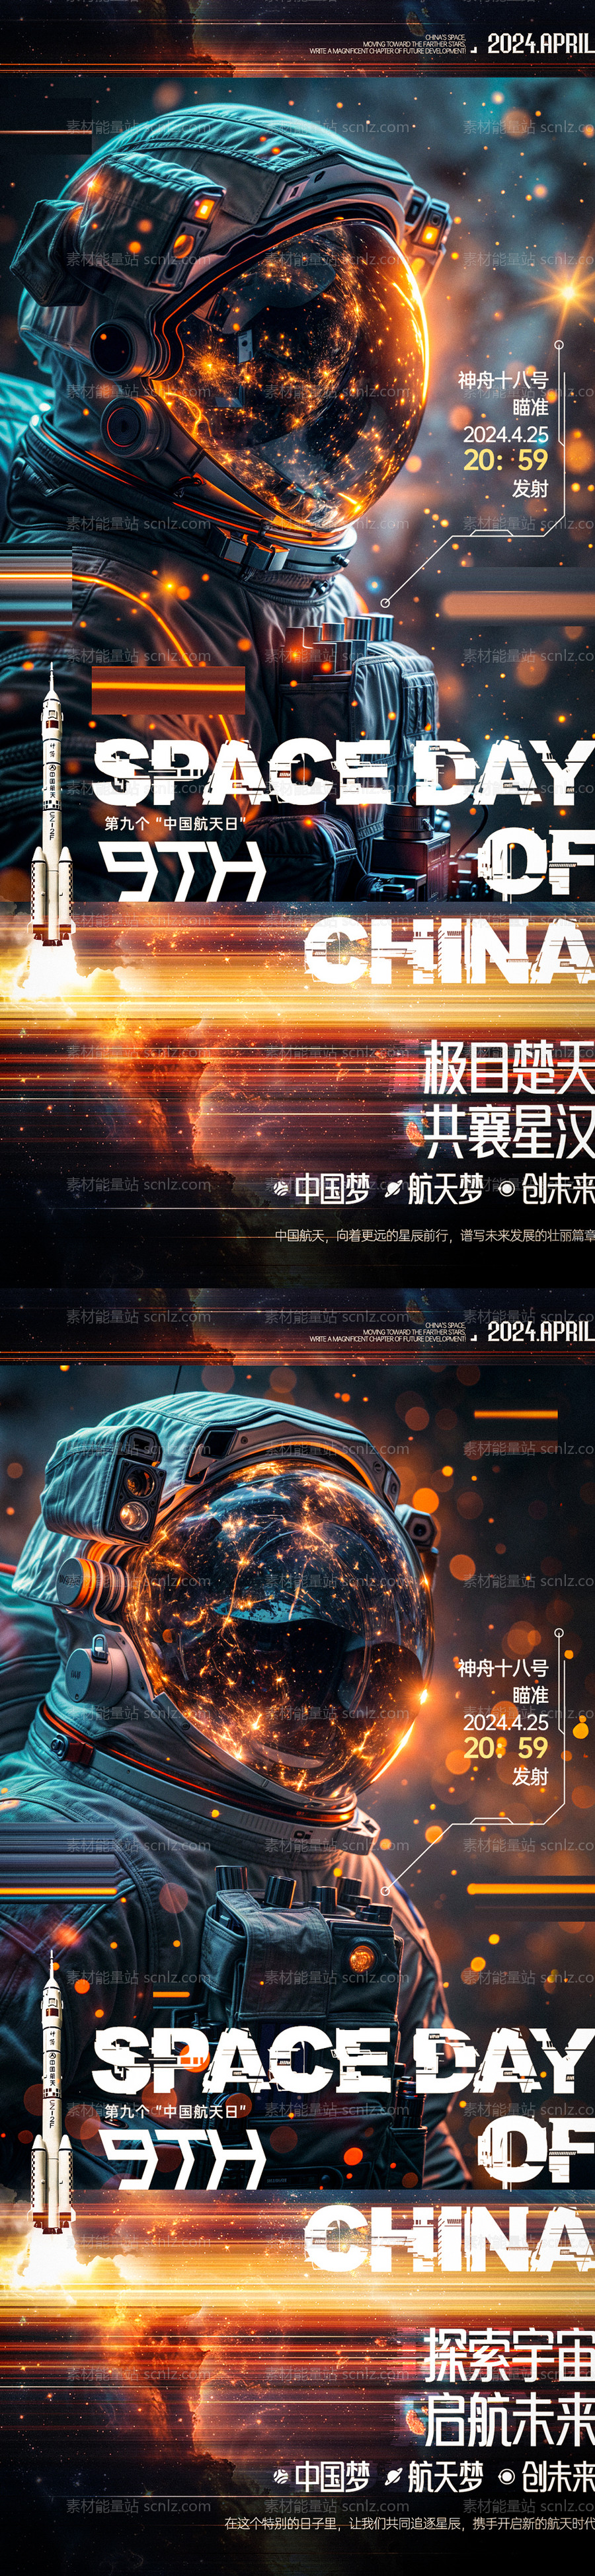 素材能量站-中国航天日航天员海报